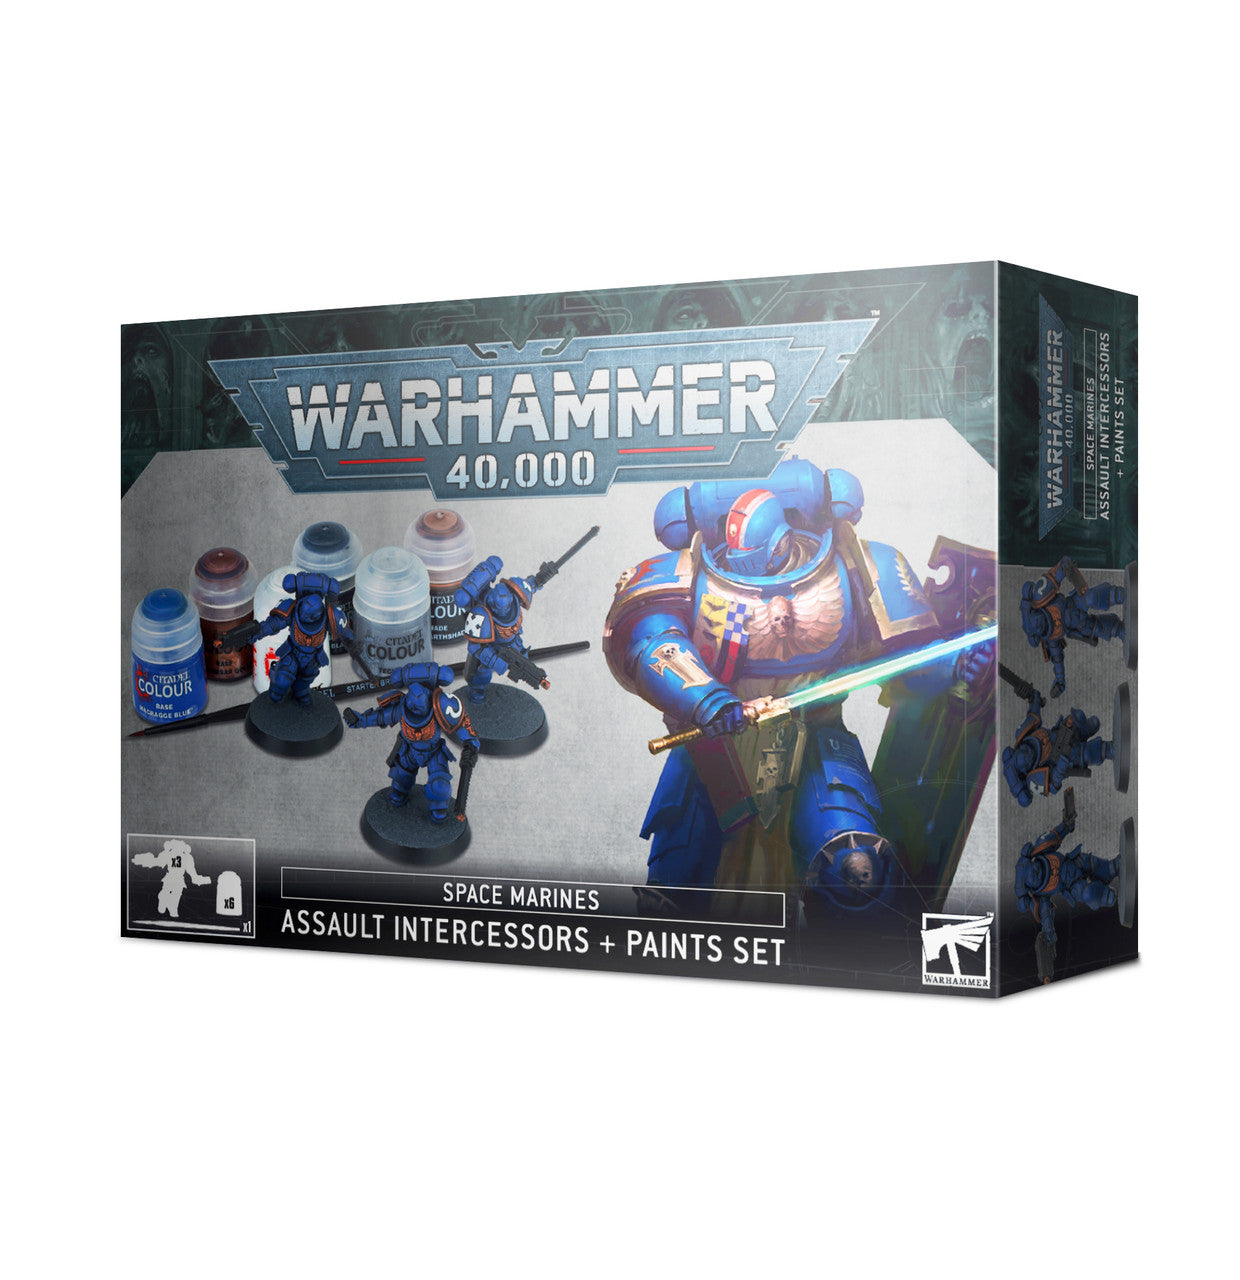 Games Workshop Warhammer 40,000 Citadel Corax White Spray Paint